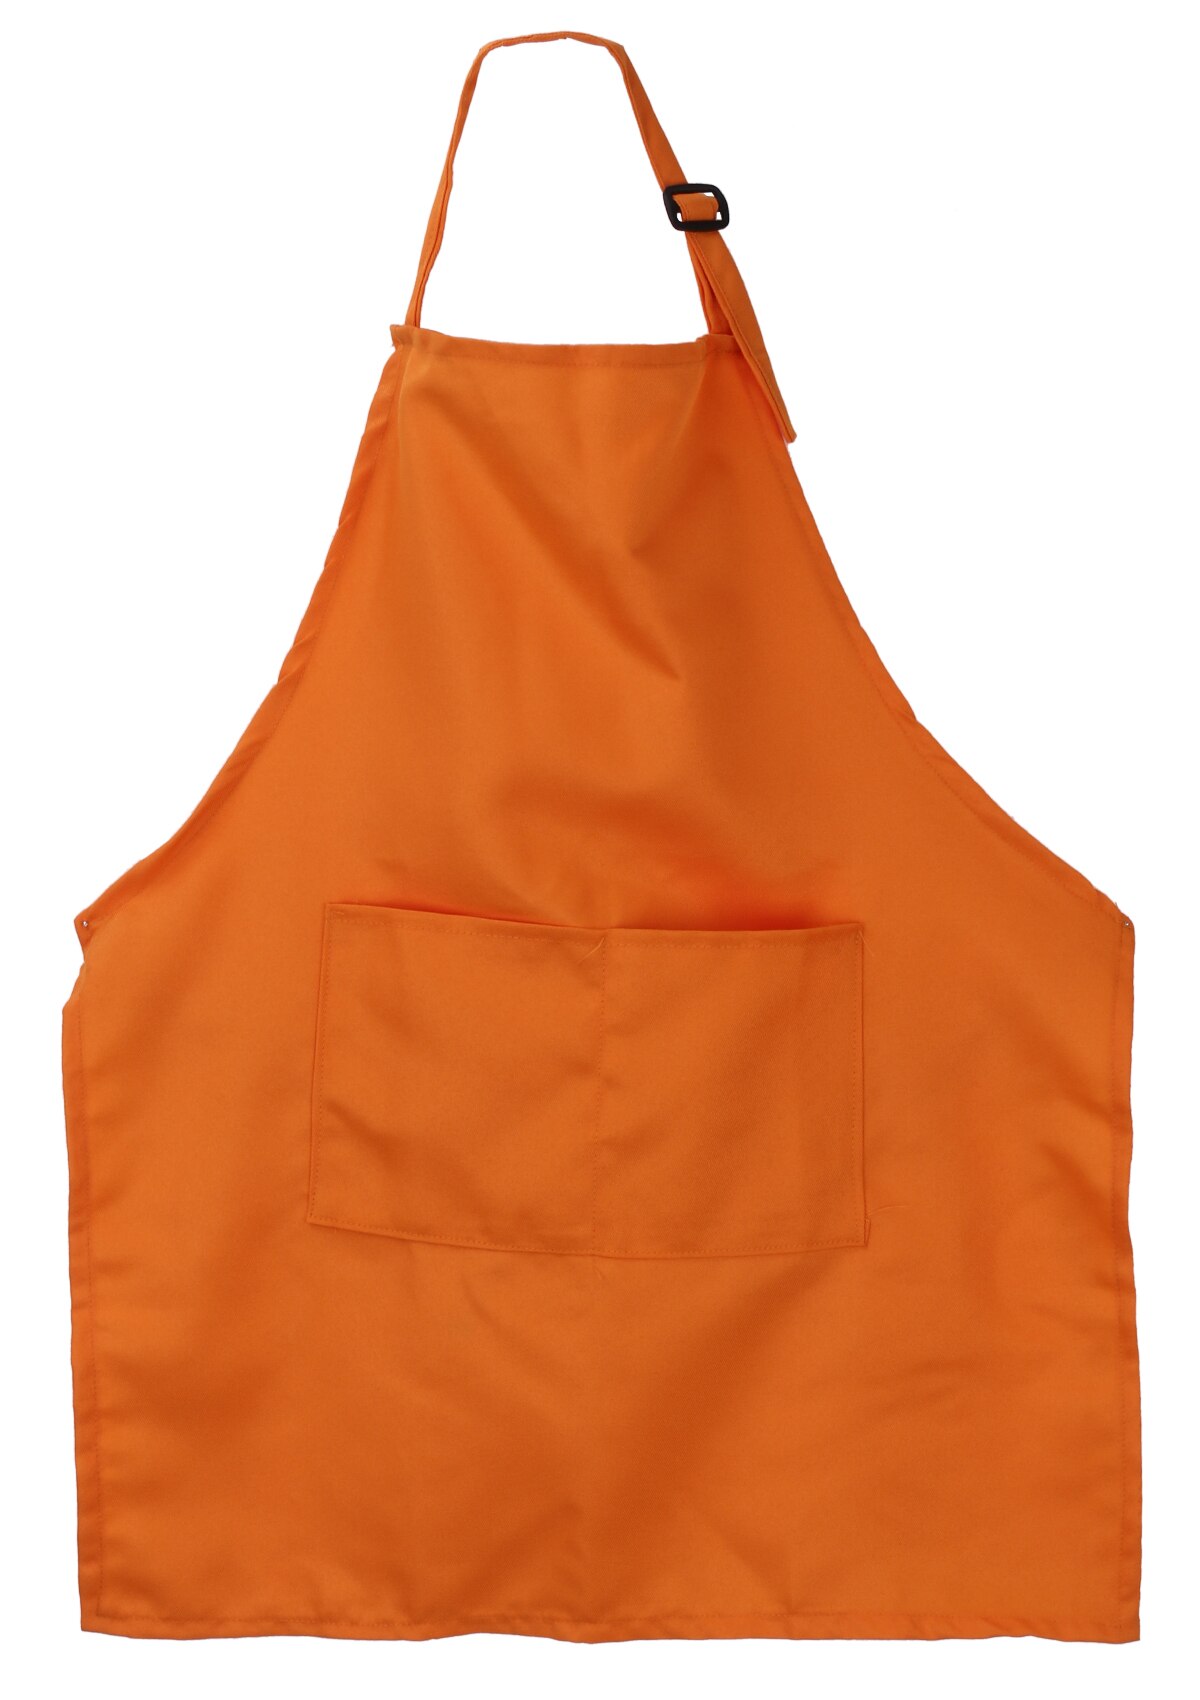 Børn børn fast almindeligt forklæde køkken madlavning bagning maleri madlavning kunst bib forklæde: Orange